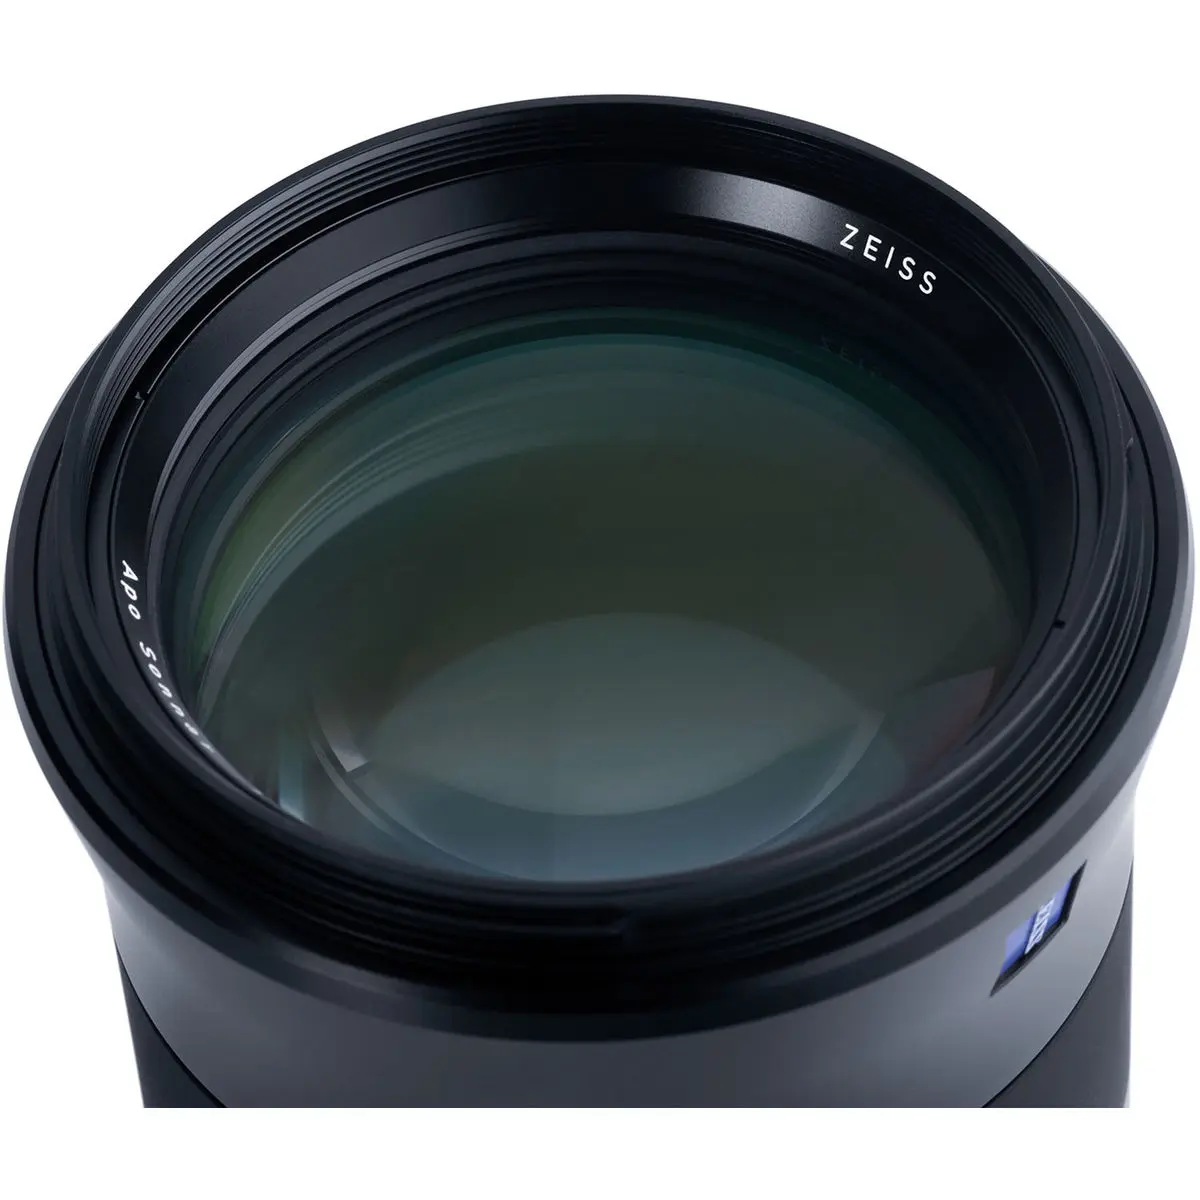 6. Carl Zeiss Otus 1.4/100 ZE (Canon) Lens